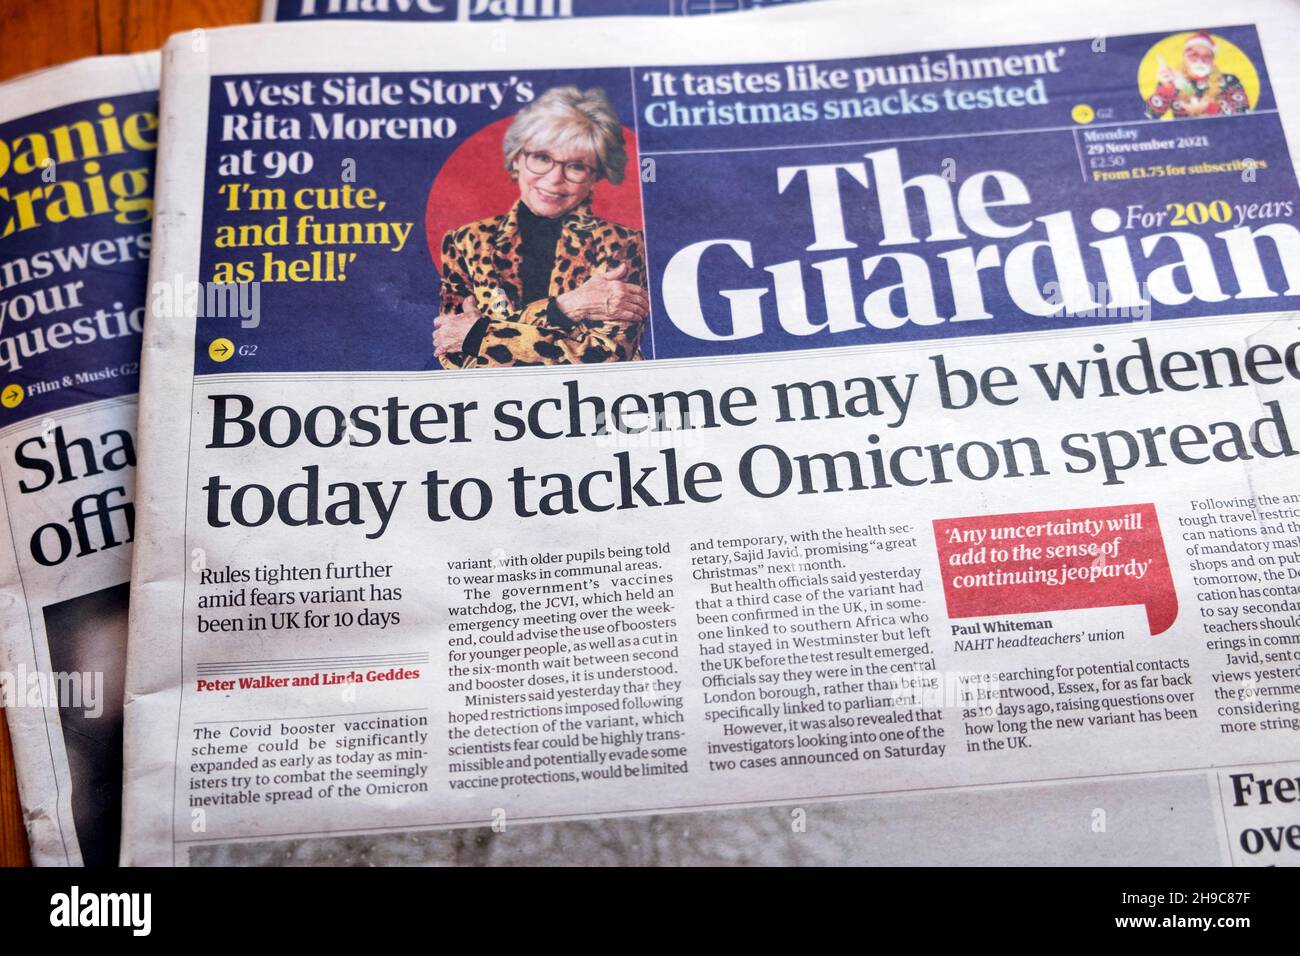 "Il piano di caricamento potrebbe essere ampliato oggi per affrontare la diffusione di Omicron", il titolo del giornale Guardian Omicron Covid in prima pagina 29 novembre 2021 a Londra nel Regno Unito Foto Stock